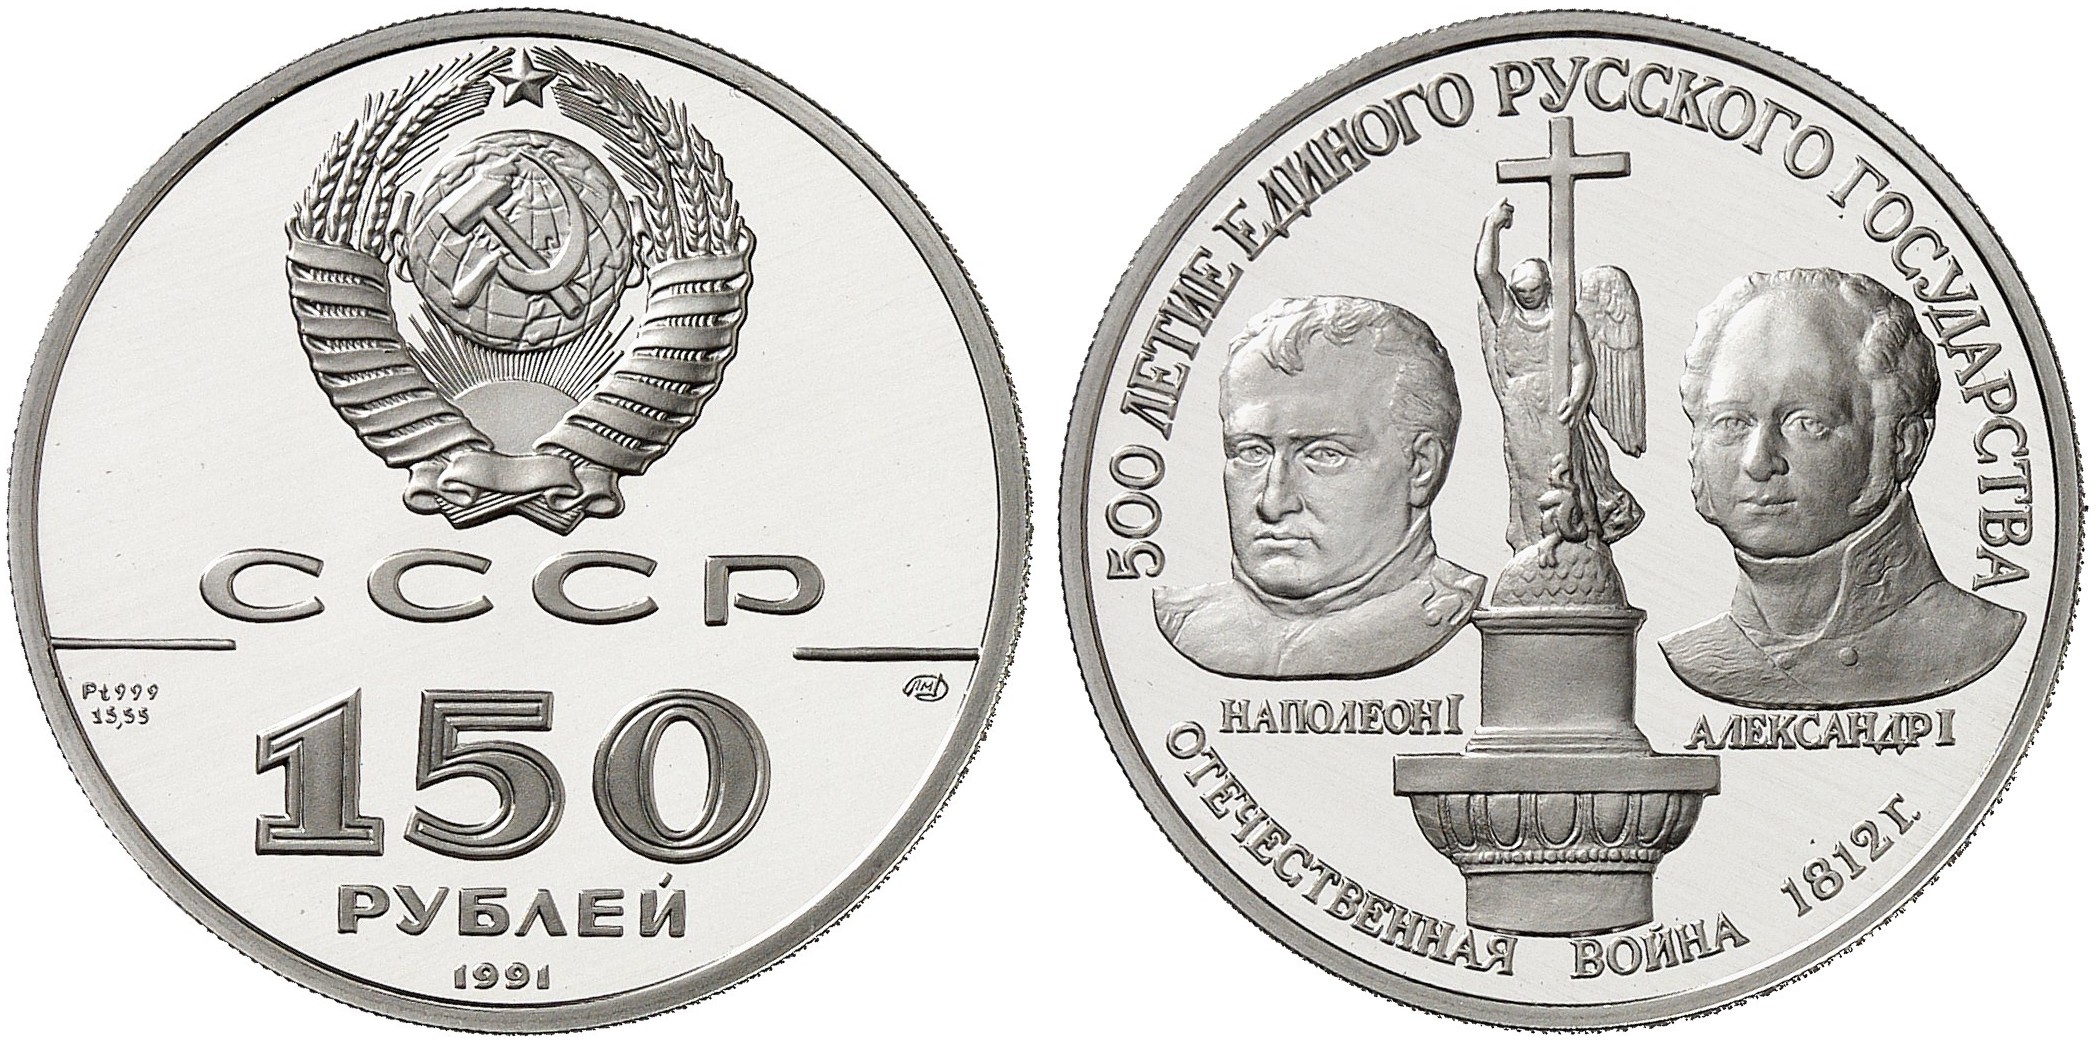 3 рубля 1991 год. Юбилейная монета с Наполеоном. Монета 150 рублей. Монета 150 рублей 1991.